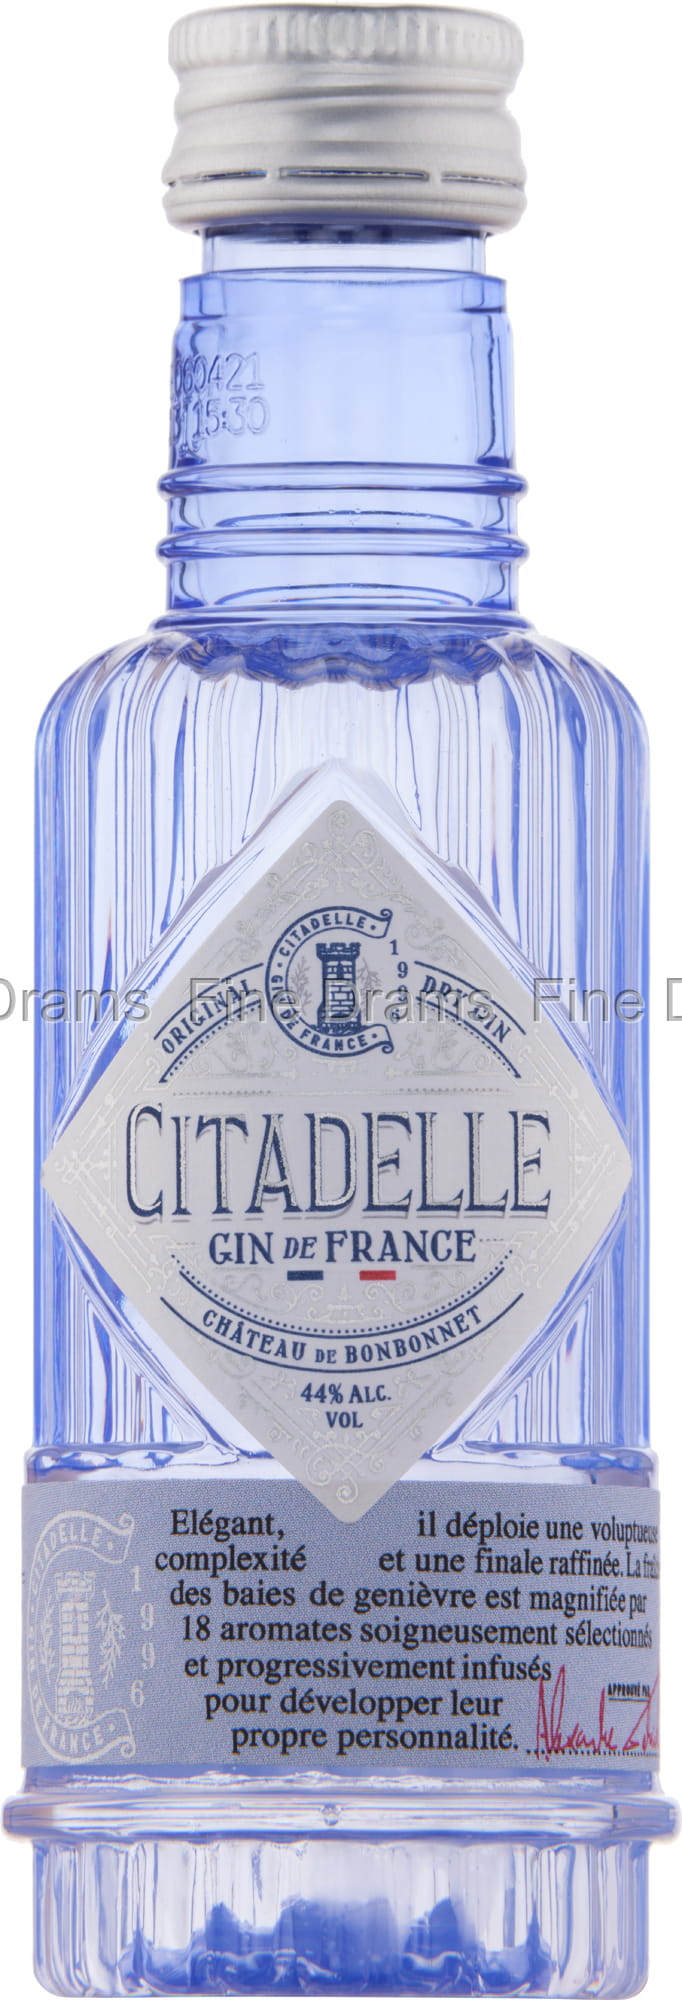 Citadelle Gin Miniature